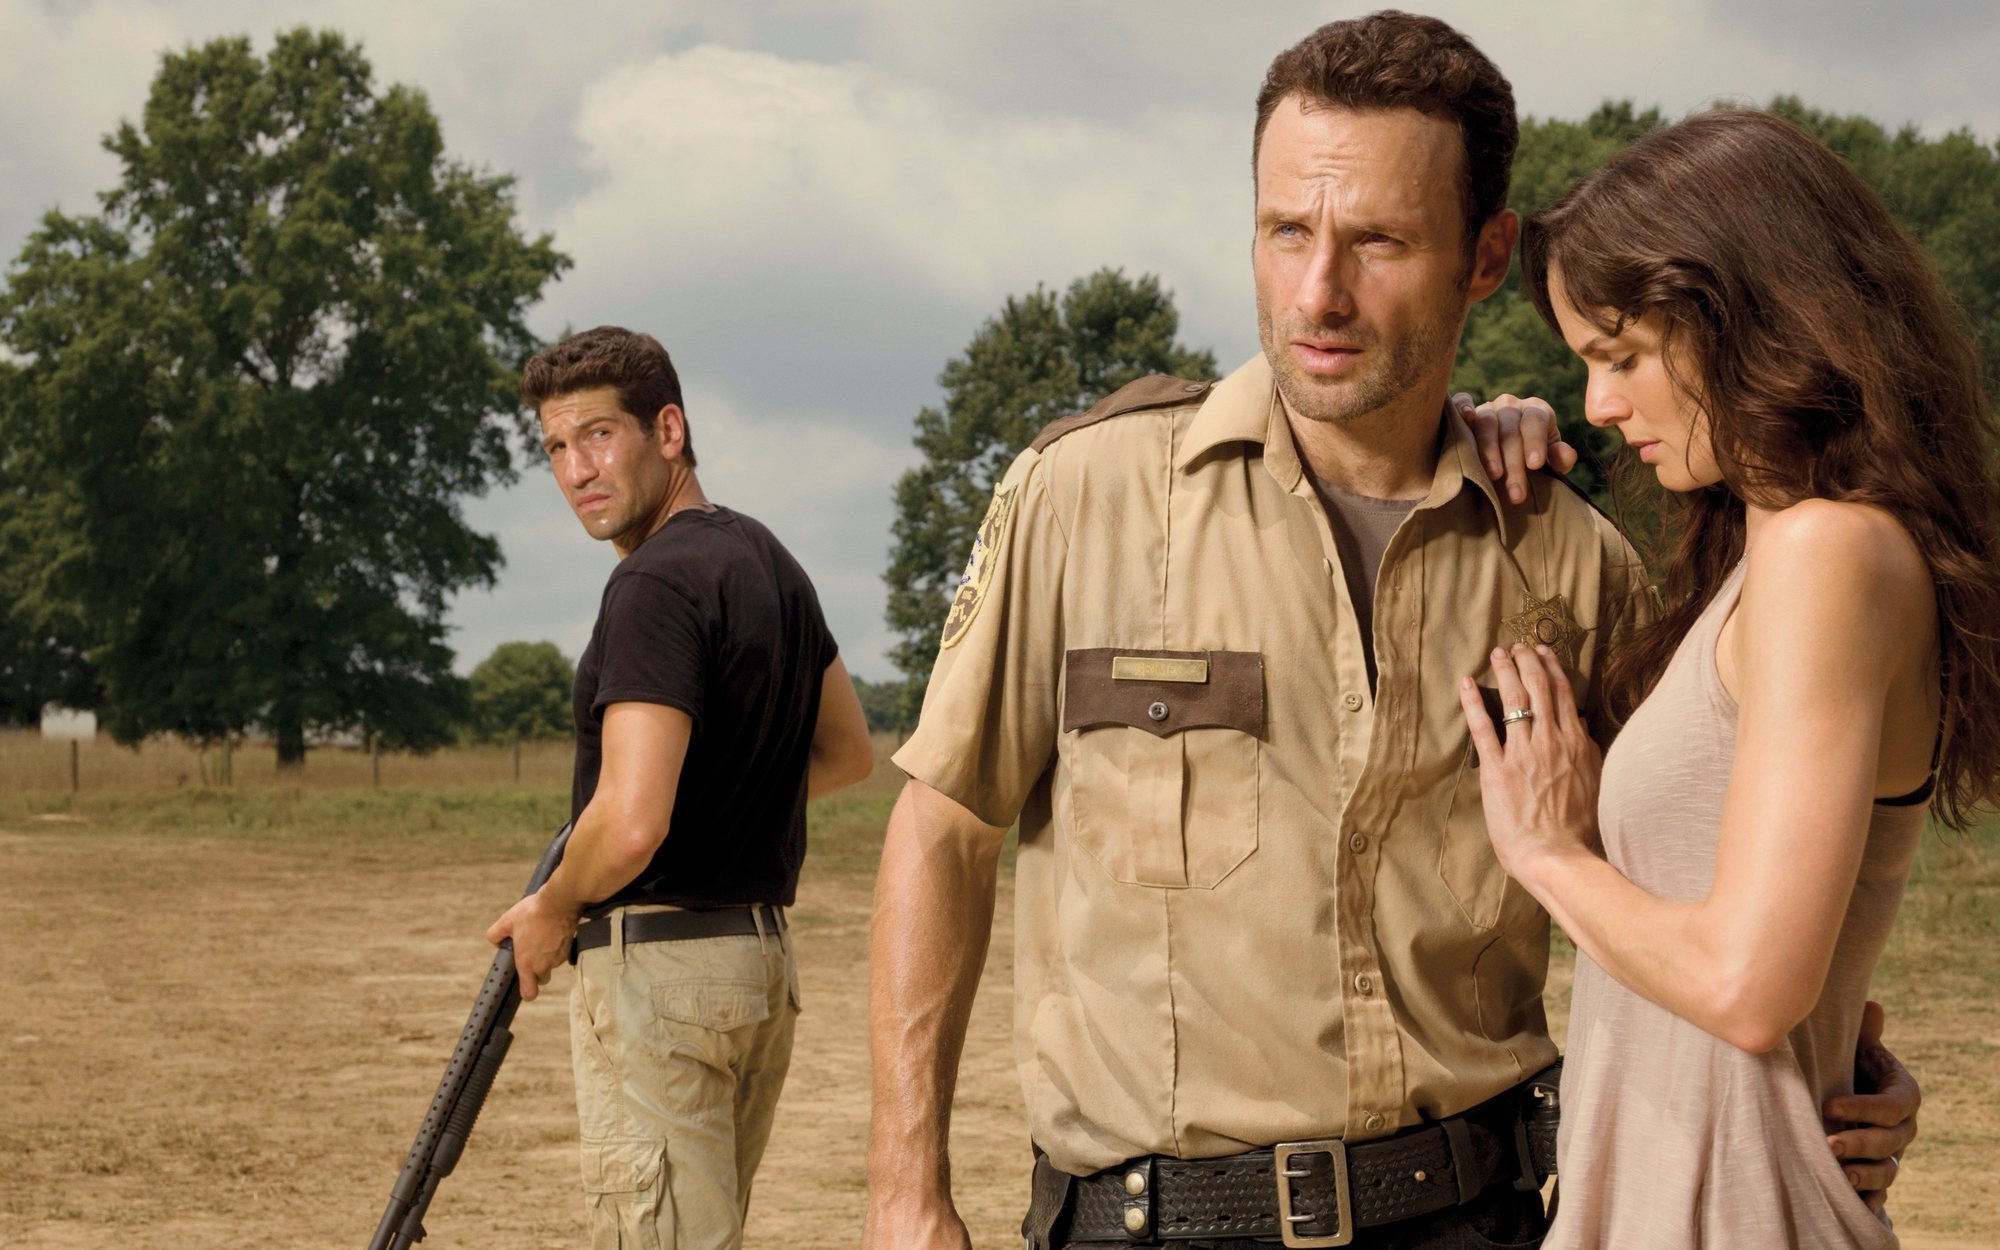 'The Walking Dead' resucitará personajes para narrar la cara oculta del apocalipsis zombie